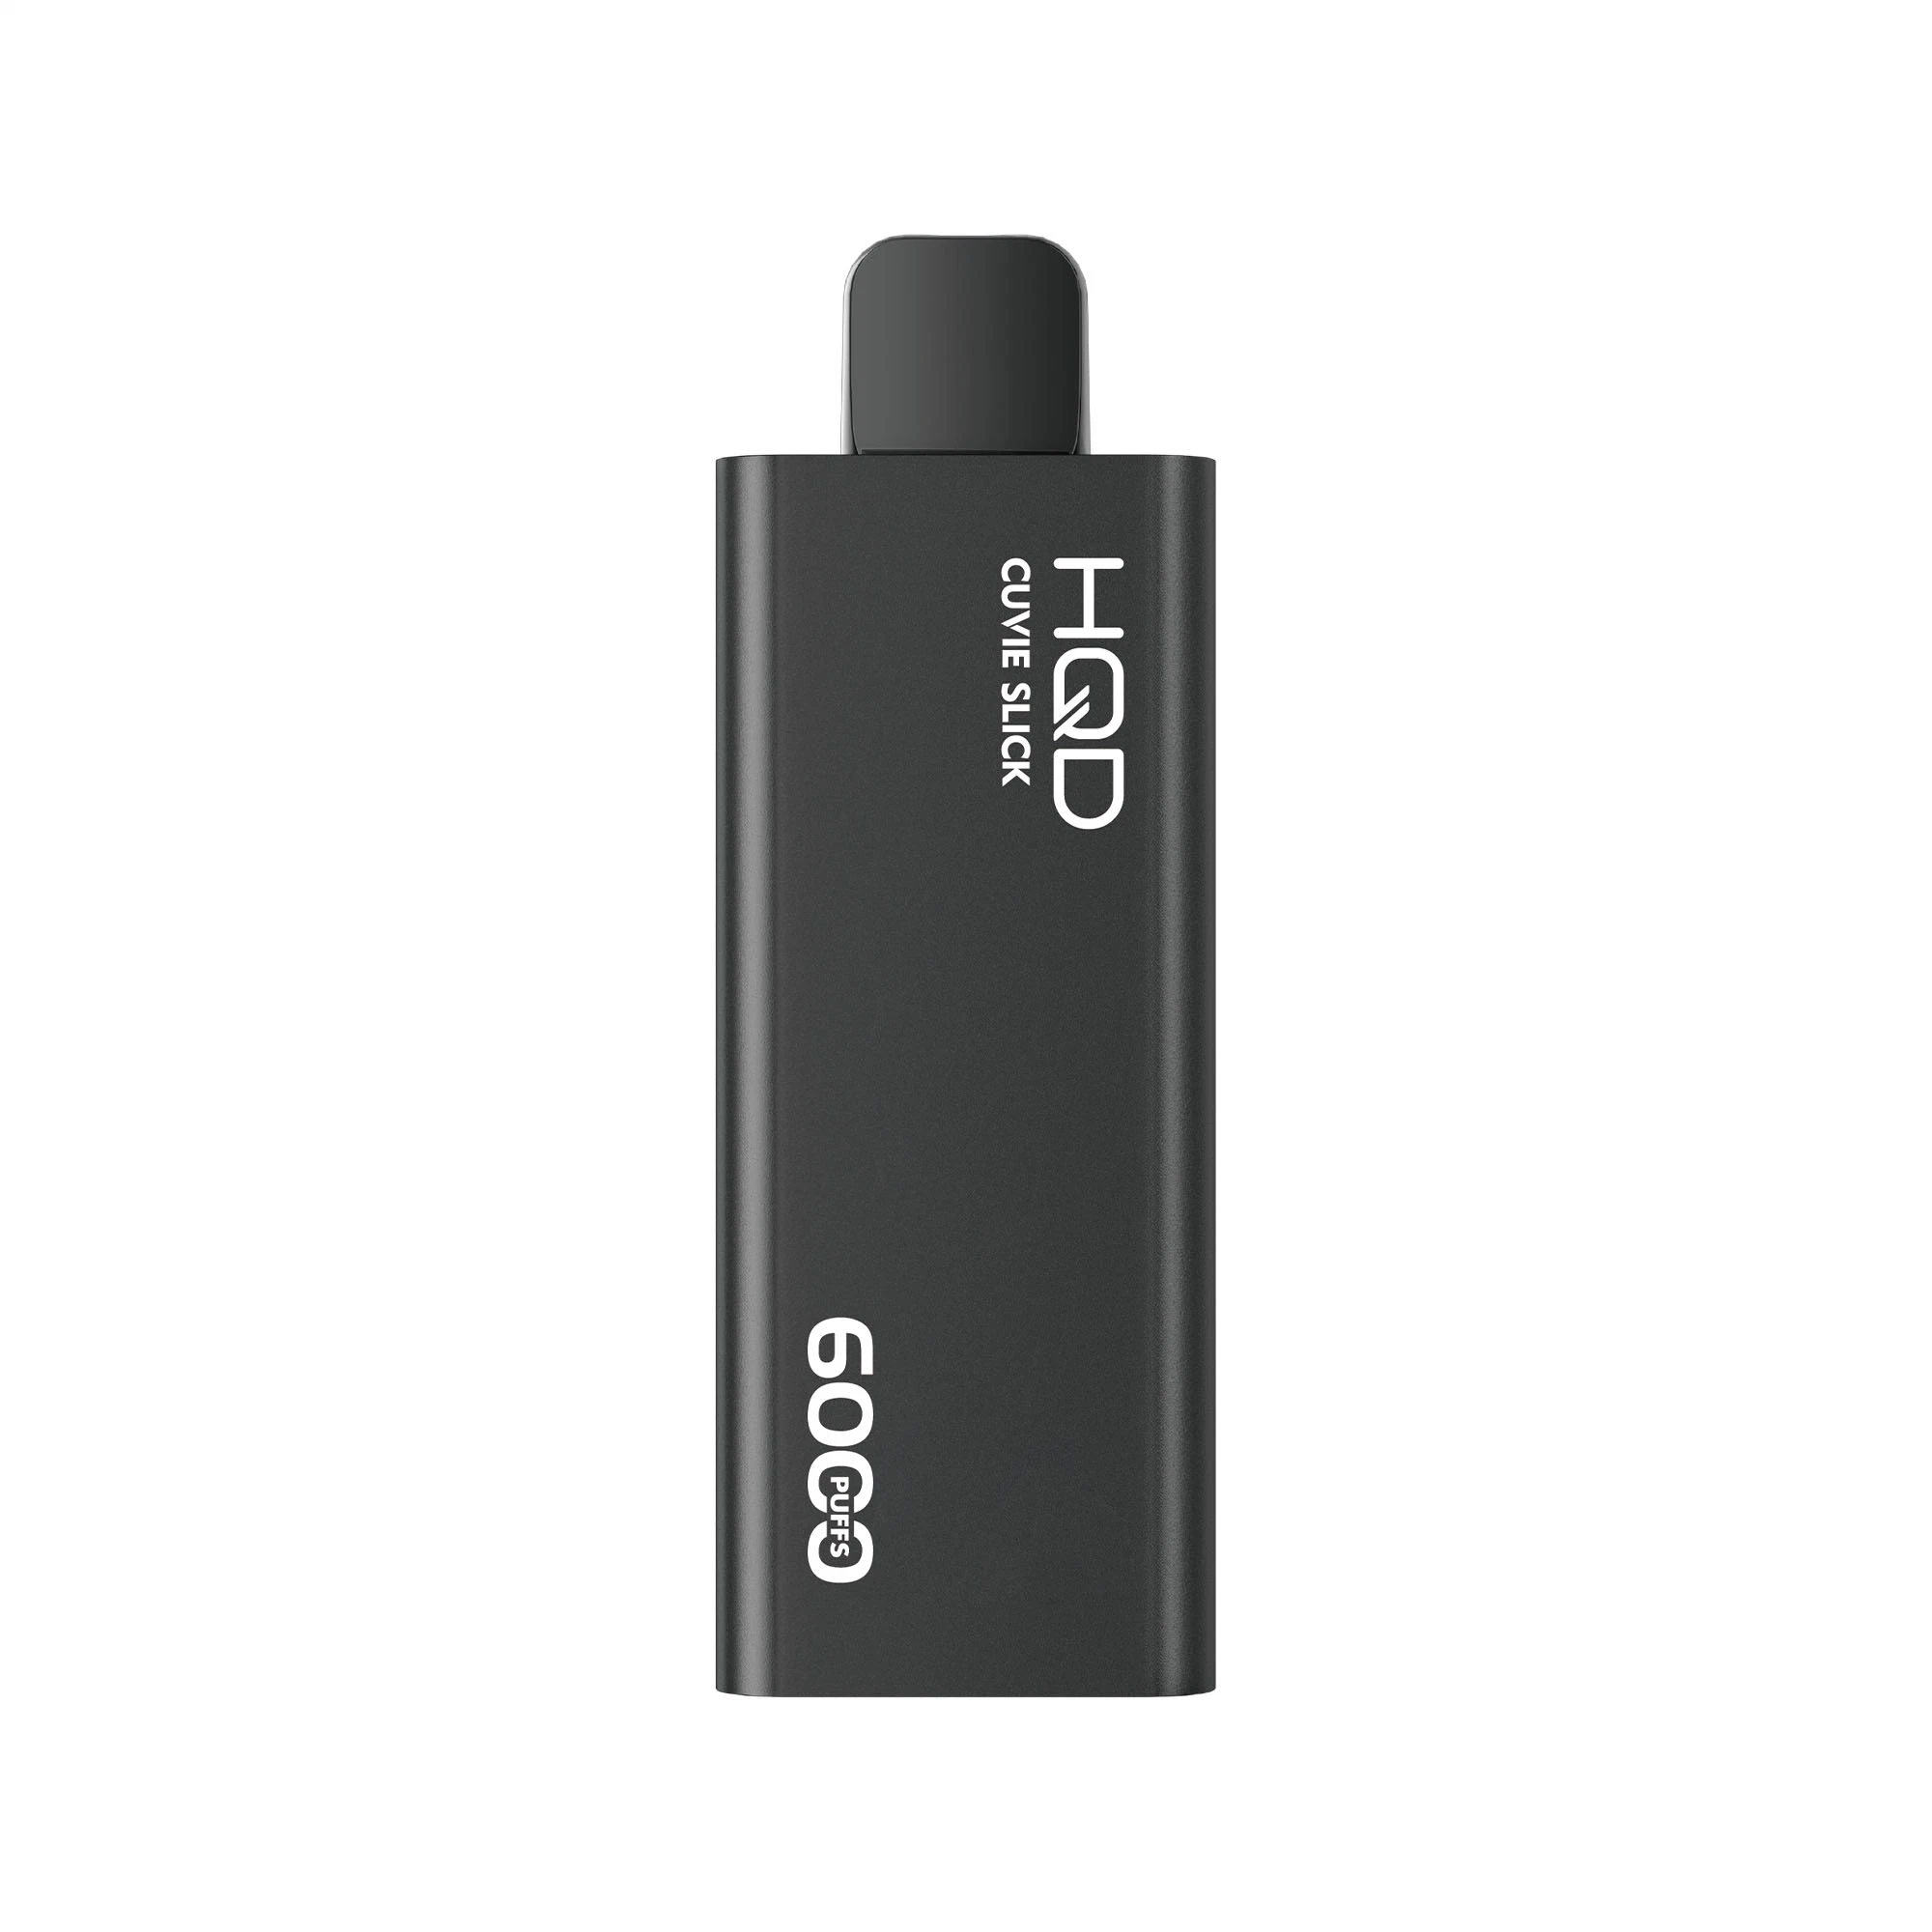 Hqd Cuvie Slick 6000 Puffs Disposable/Chargeable Vape Pen Atomizer Vape E Cigarette